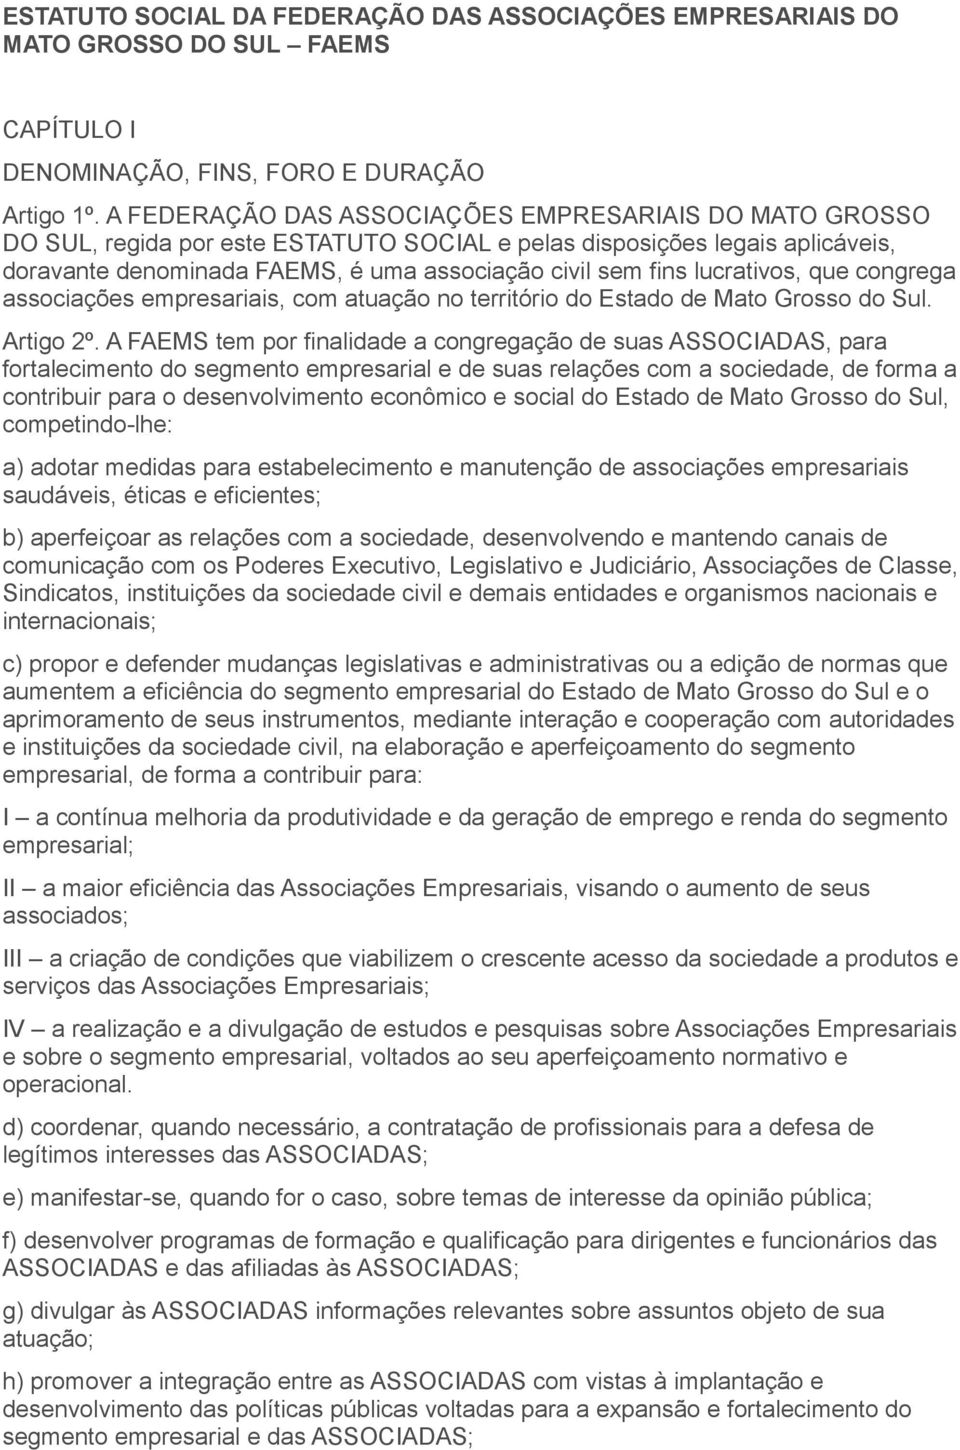 lucrativos, que congrega associações empresariais, com atuação no território do Estado de Mato Grosso do Sul. Artigo 2º.